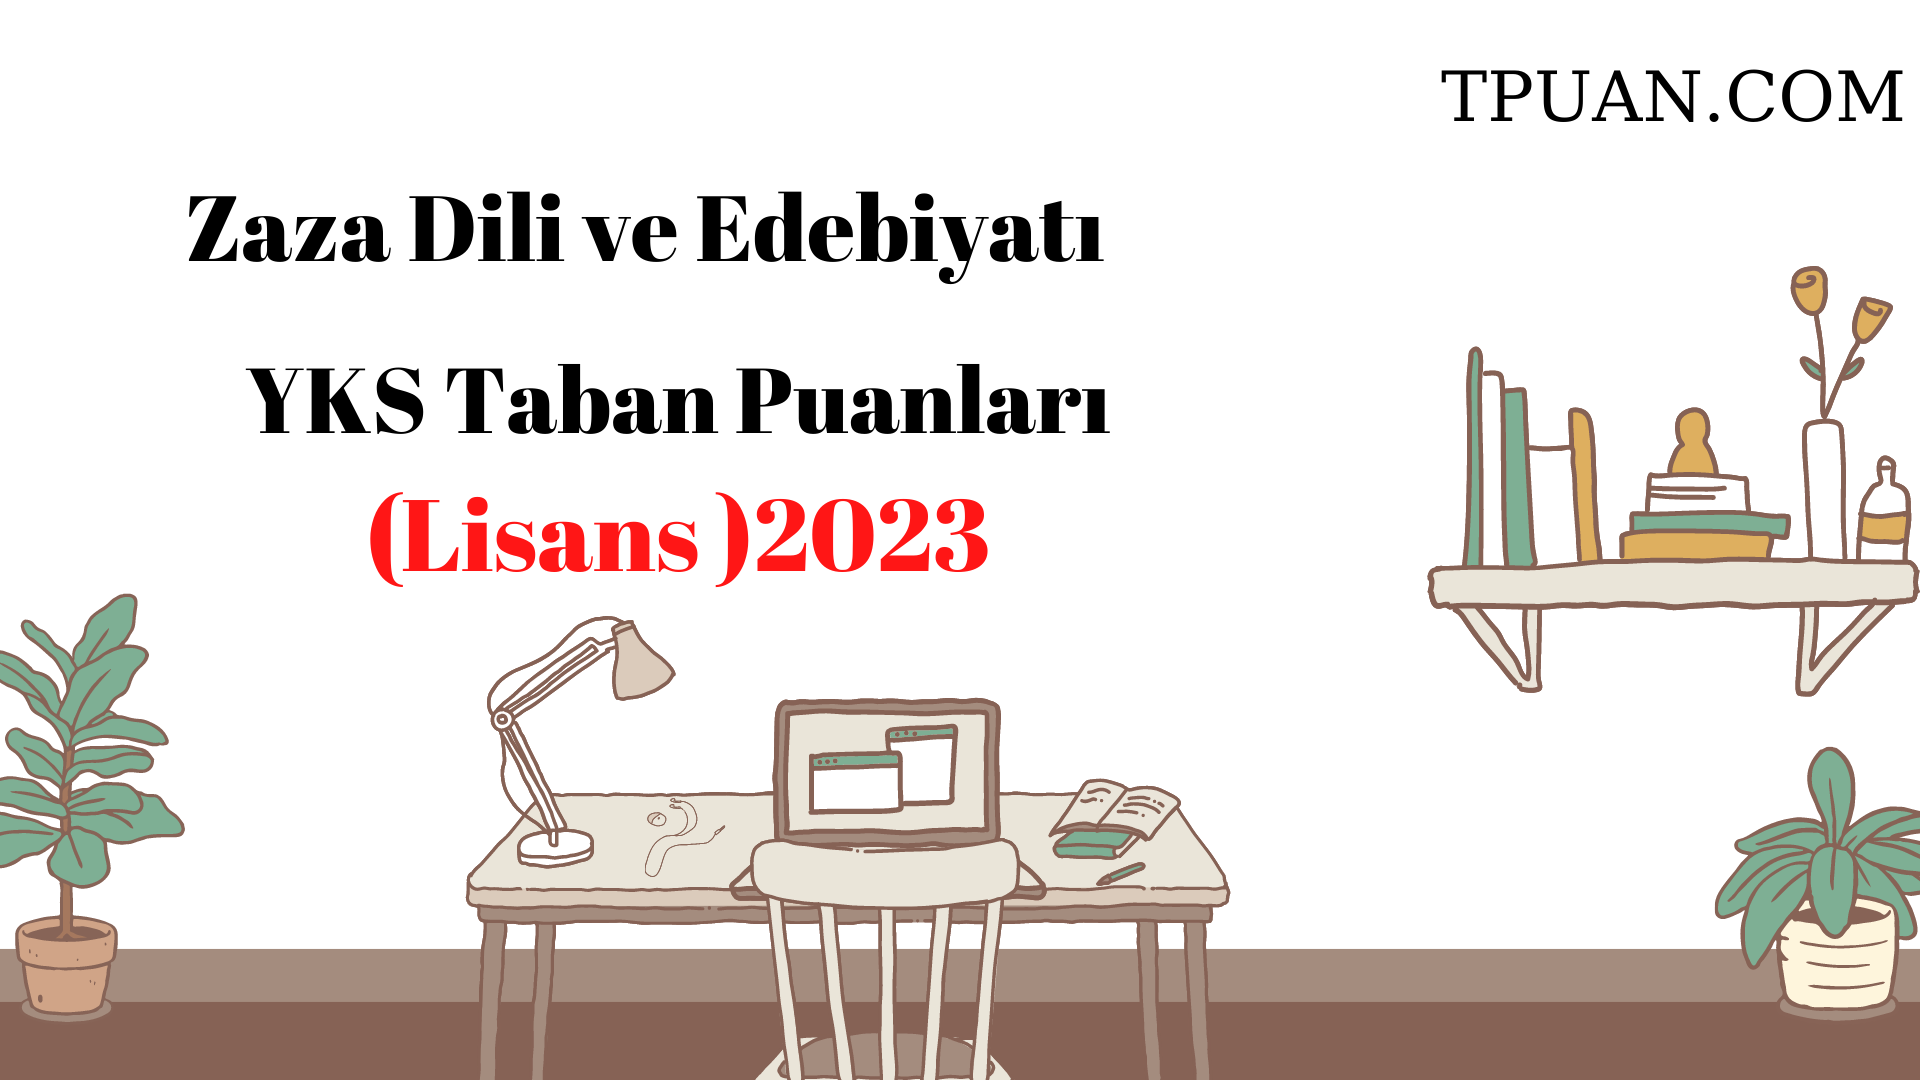  Zaza Dili ve Edebiyatı Bölümü YKS Taban Puanları (4 Yıllık) 2023